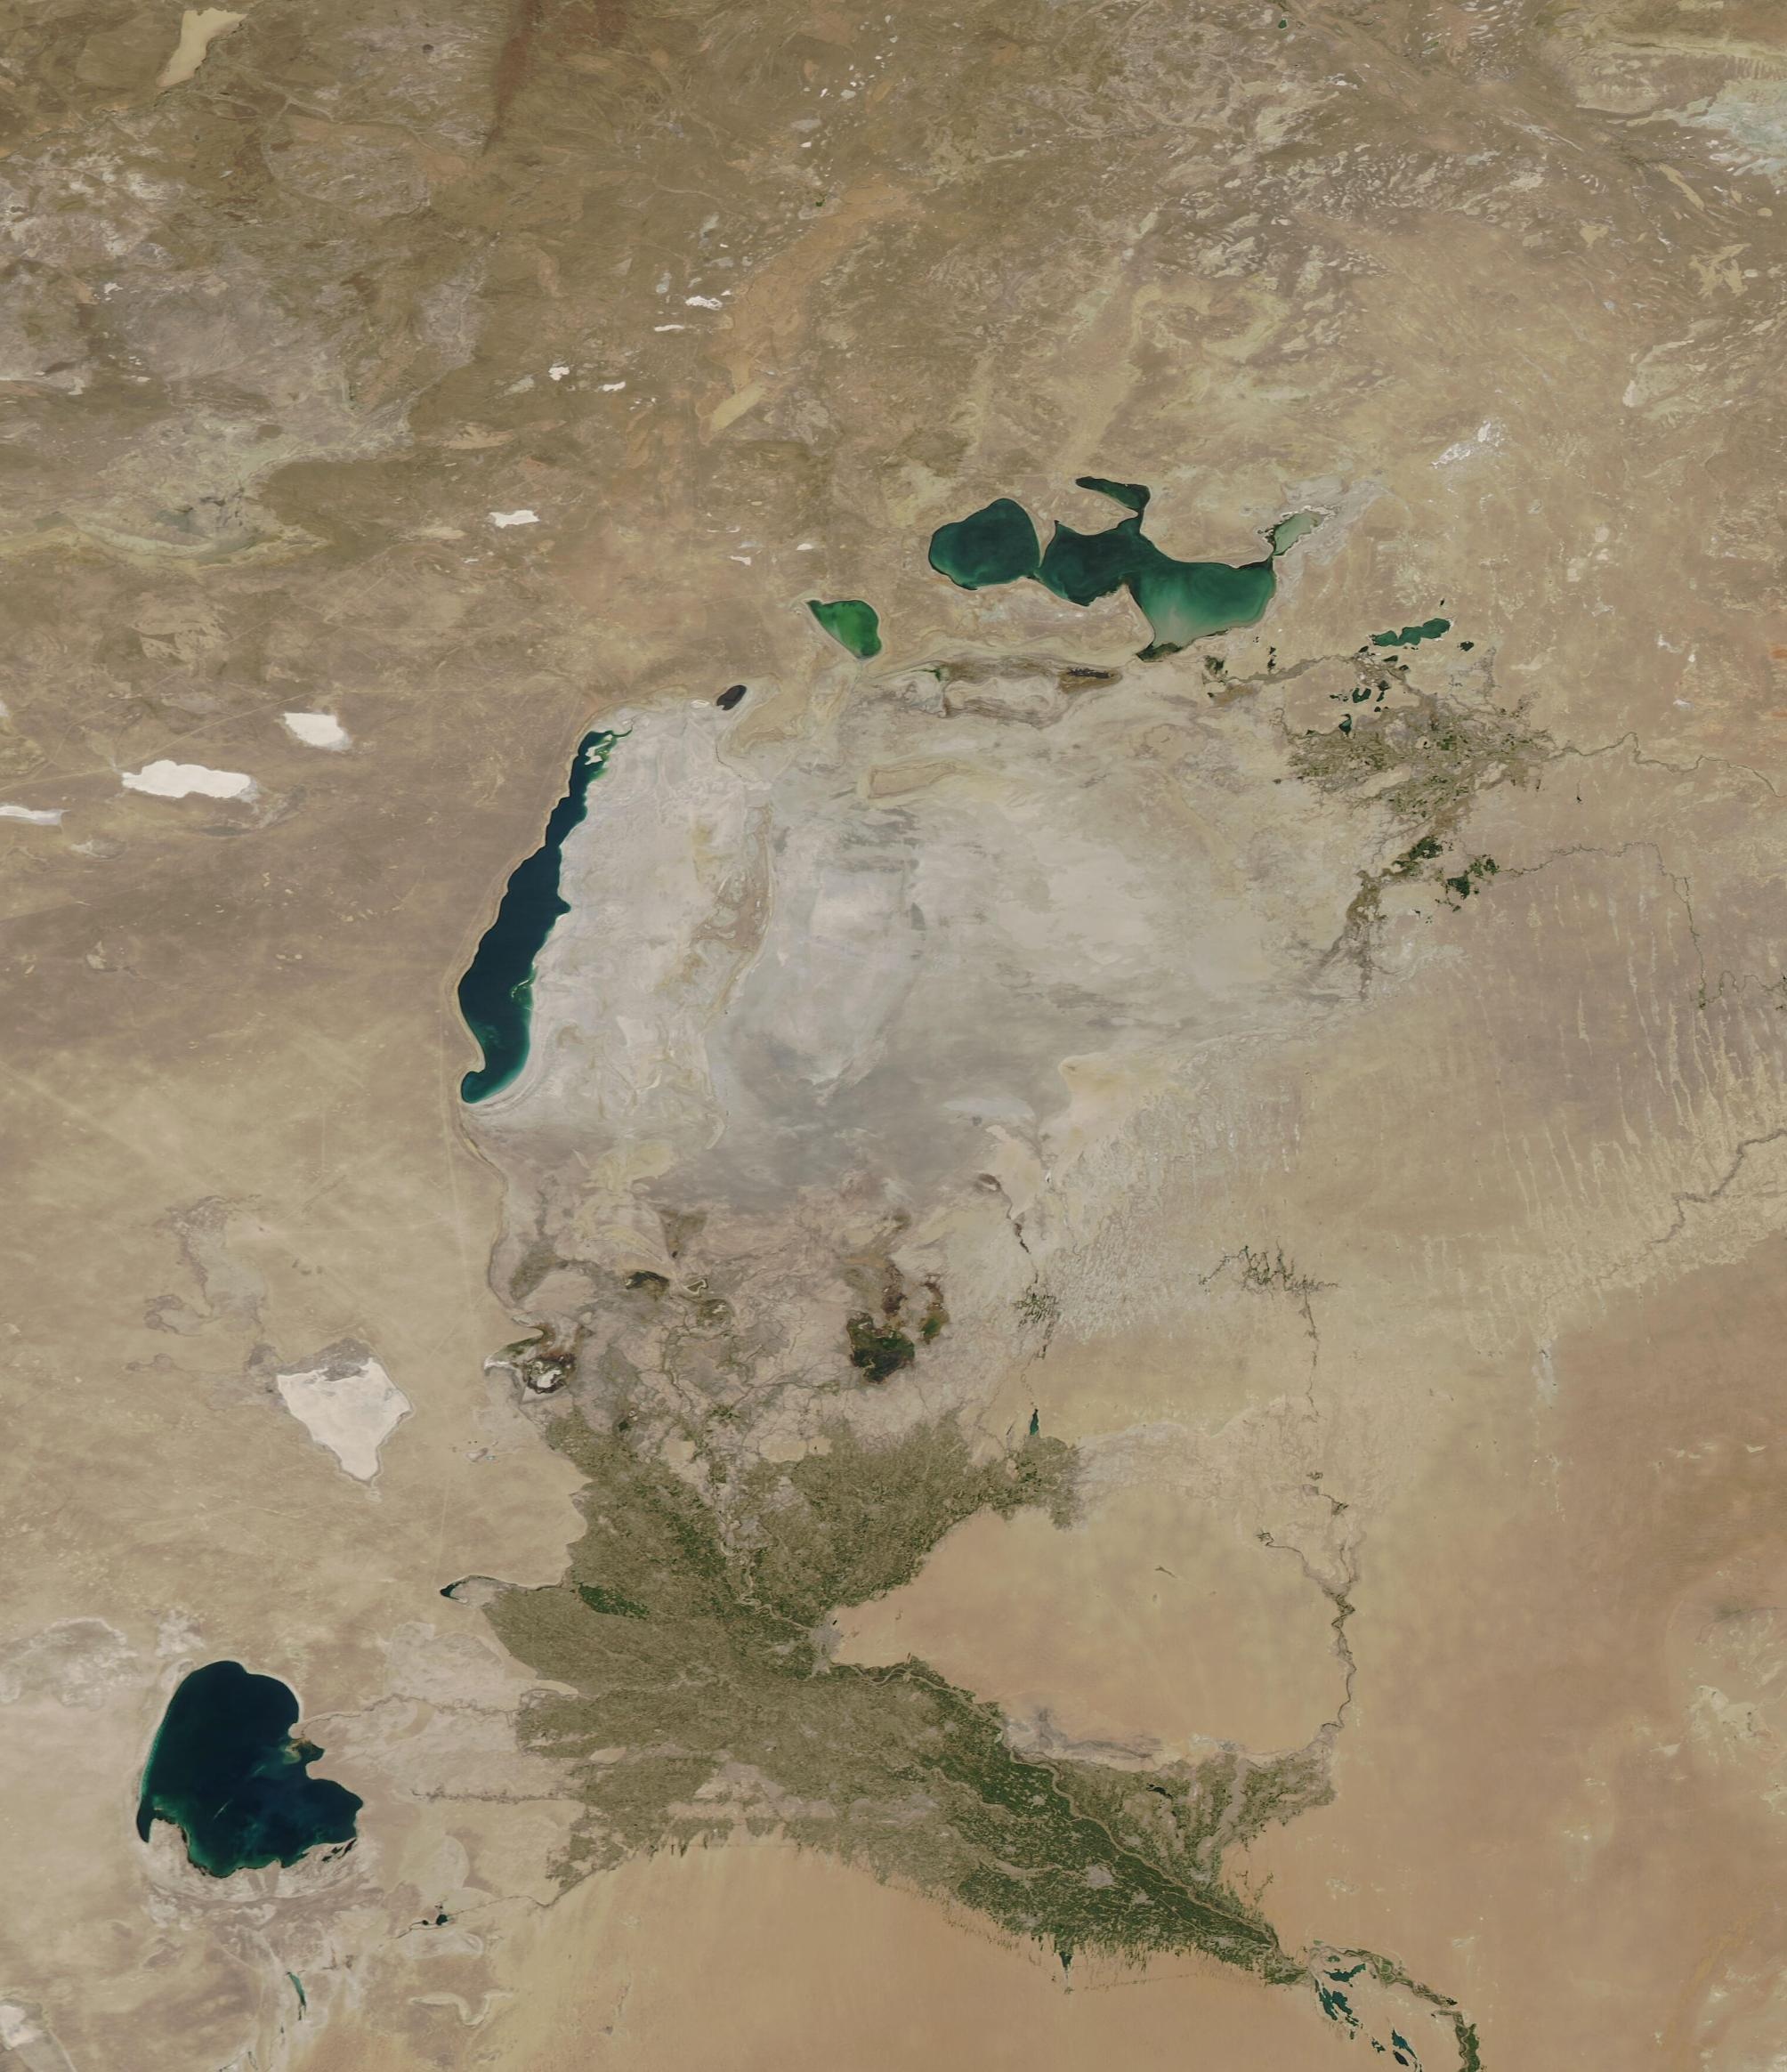 Luftaufnahme eines ausgetrockneten Sees mit wenigen übriggebliebenen Wasserstellen. Rundherum ist nur mehr Wüste zu sehen.  © Wikimedia